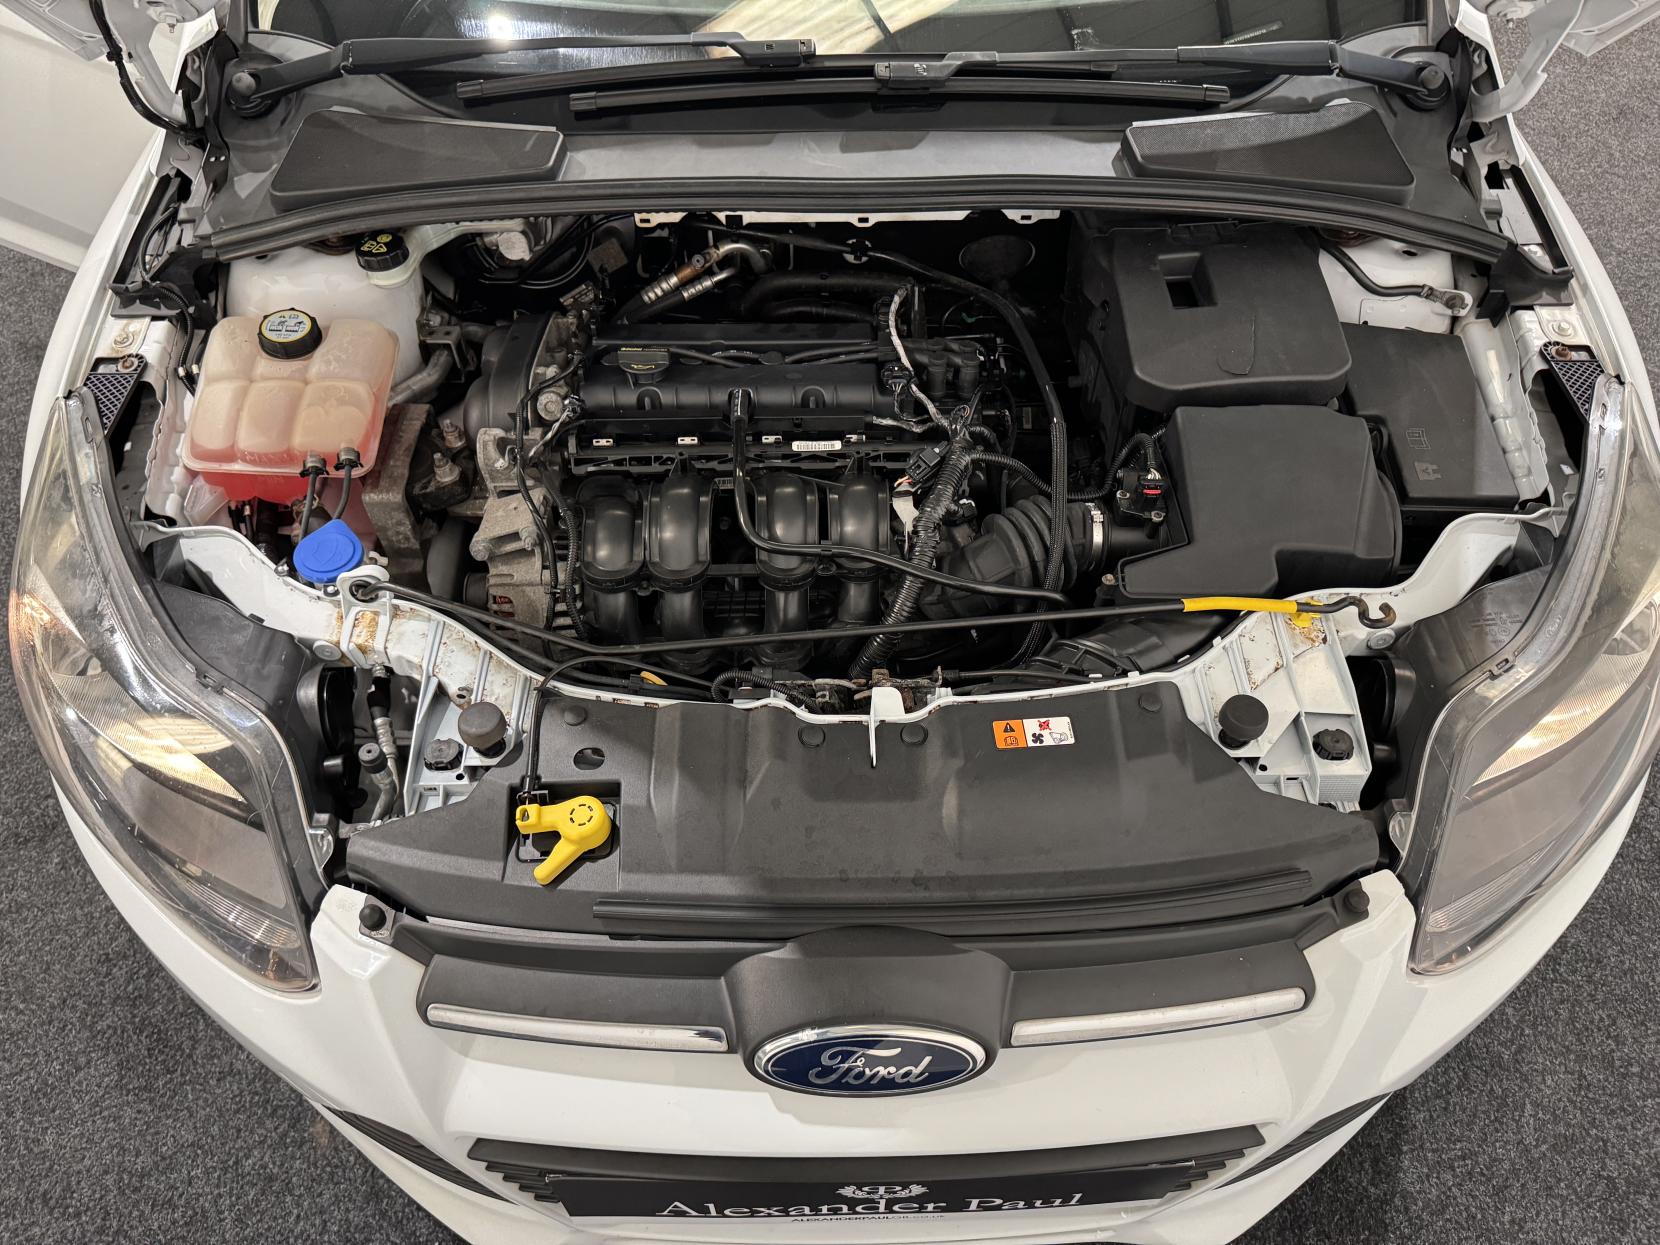 Ford Focus 1.6 Zetec Hatchback 5dr Petrol Manual Euro 5 (105 ps)